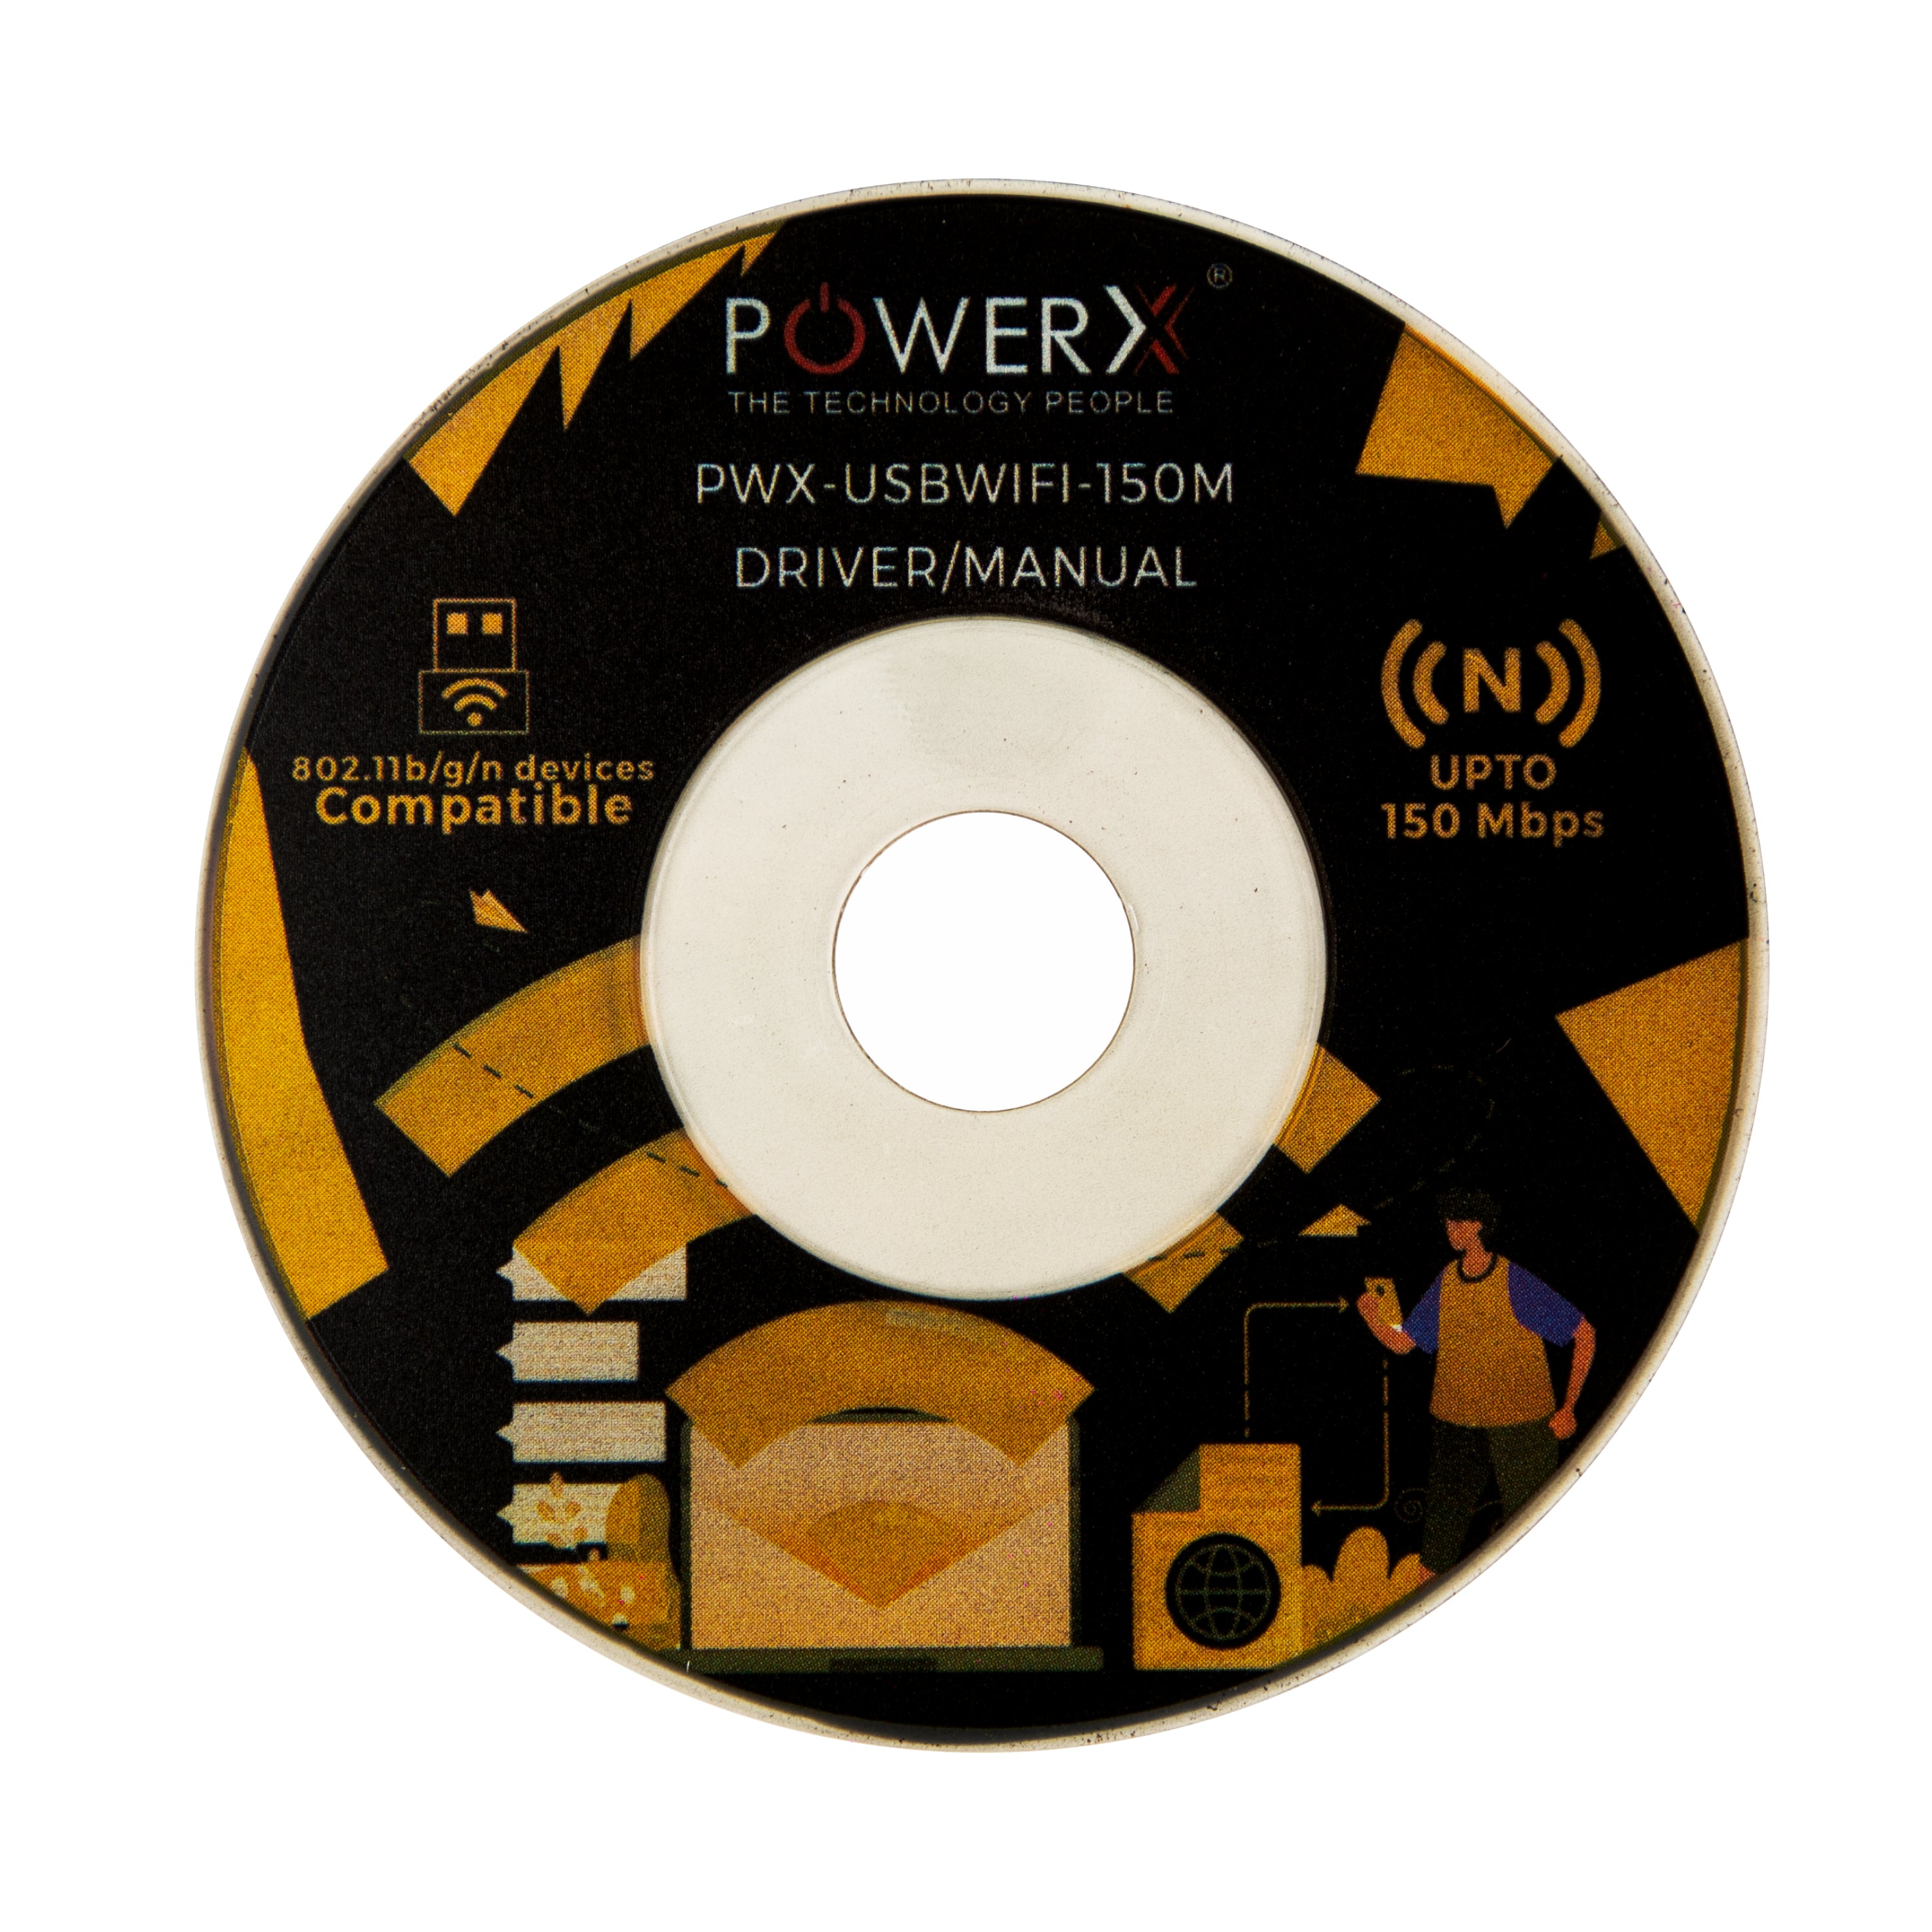 PWX-USBWIFI-150M